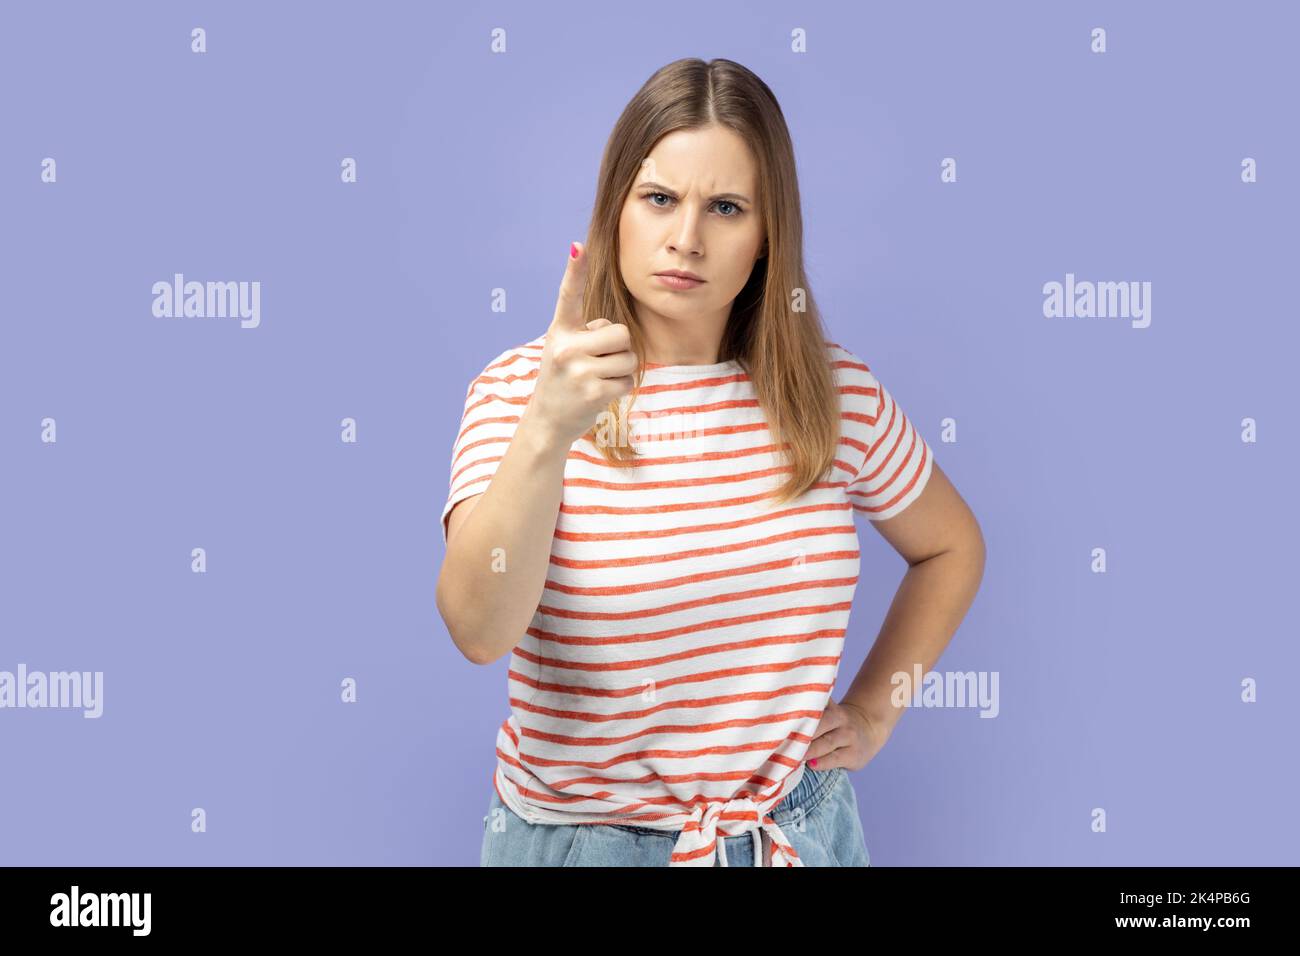 Porträt einer blonden Frau mit gestreiftem T-Shirt, der mit dem Finger auf die Kamera zeigt und mit unzufriedenem, verdächtigem Ausdruck vor Problemen warnt. Innenaufnahme des Studios isoliert auf violettem Hintergrund. Stockfoto